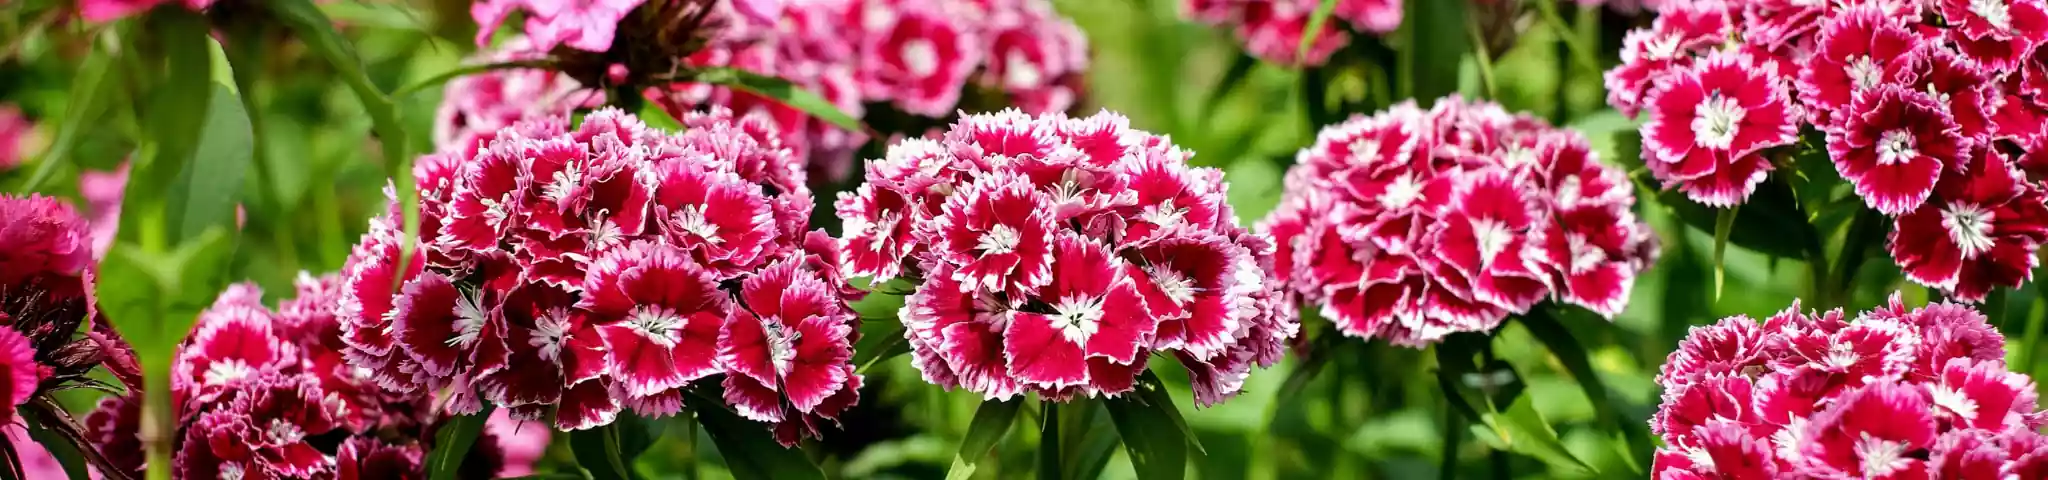 Carnation flower in garden